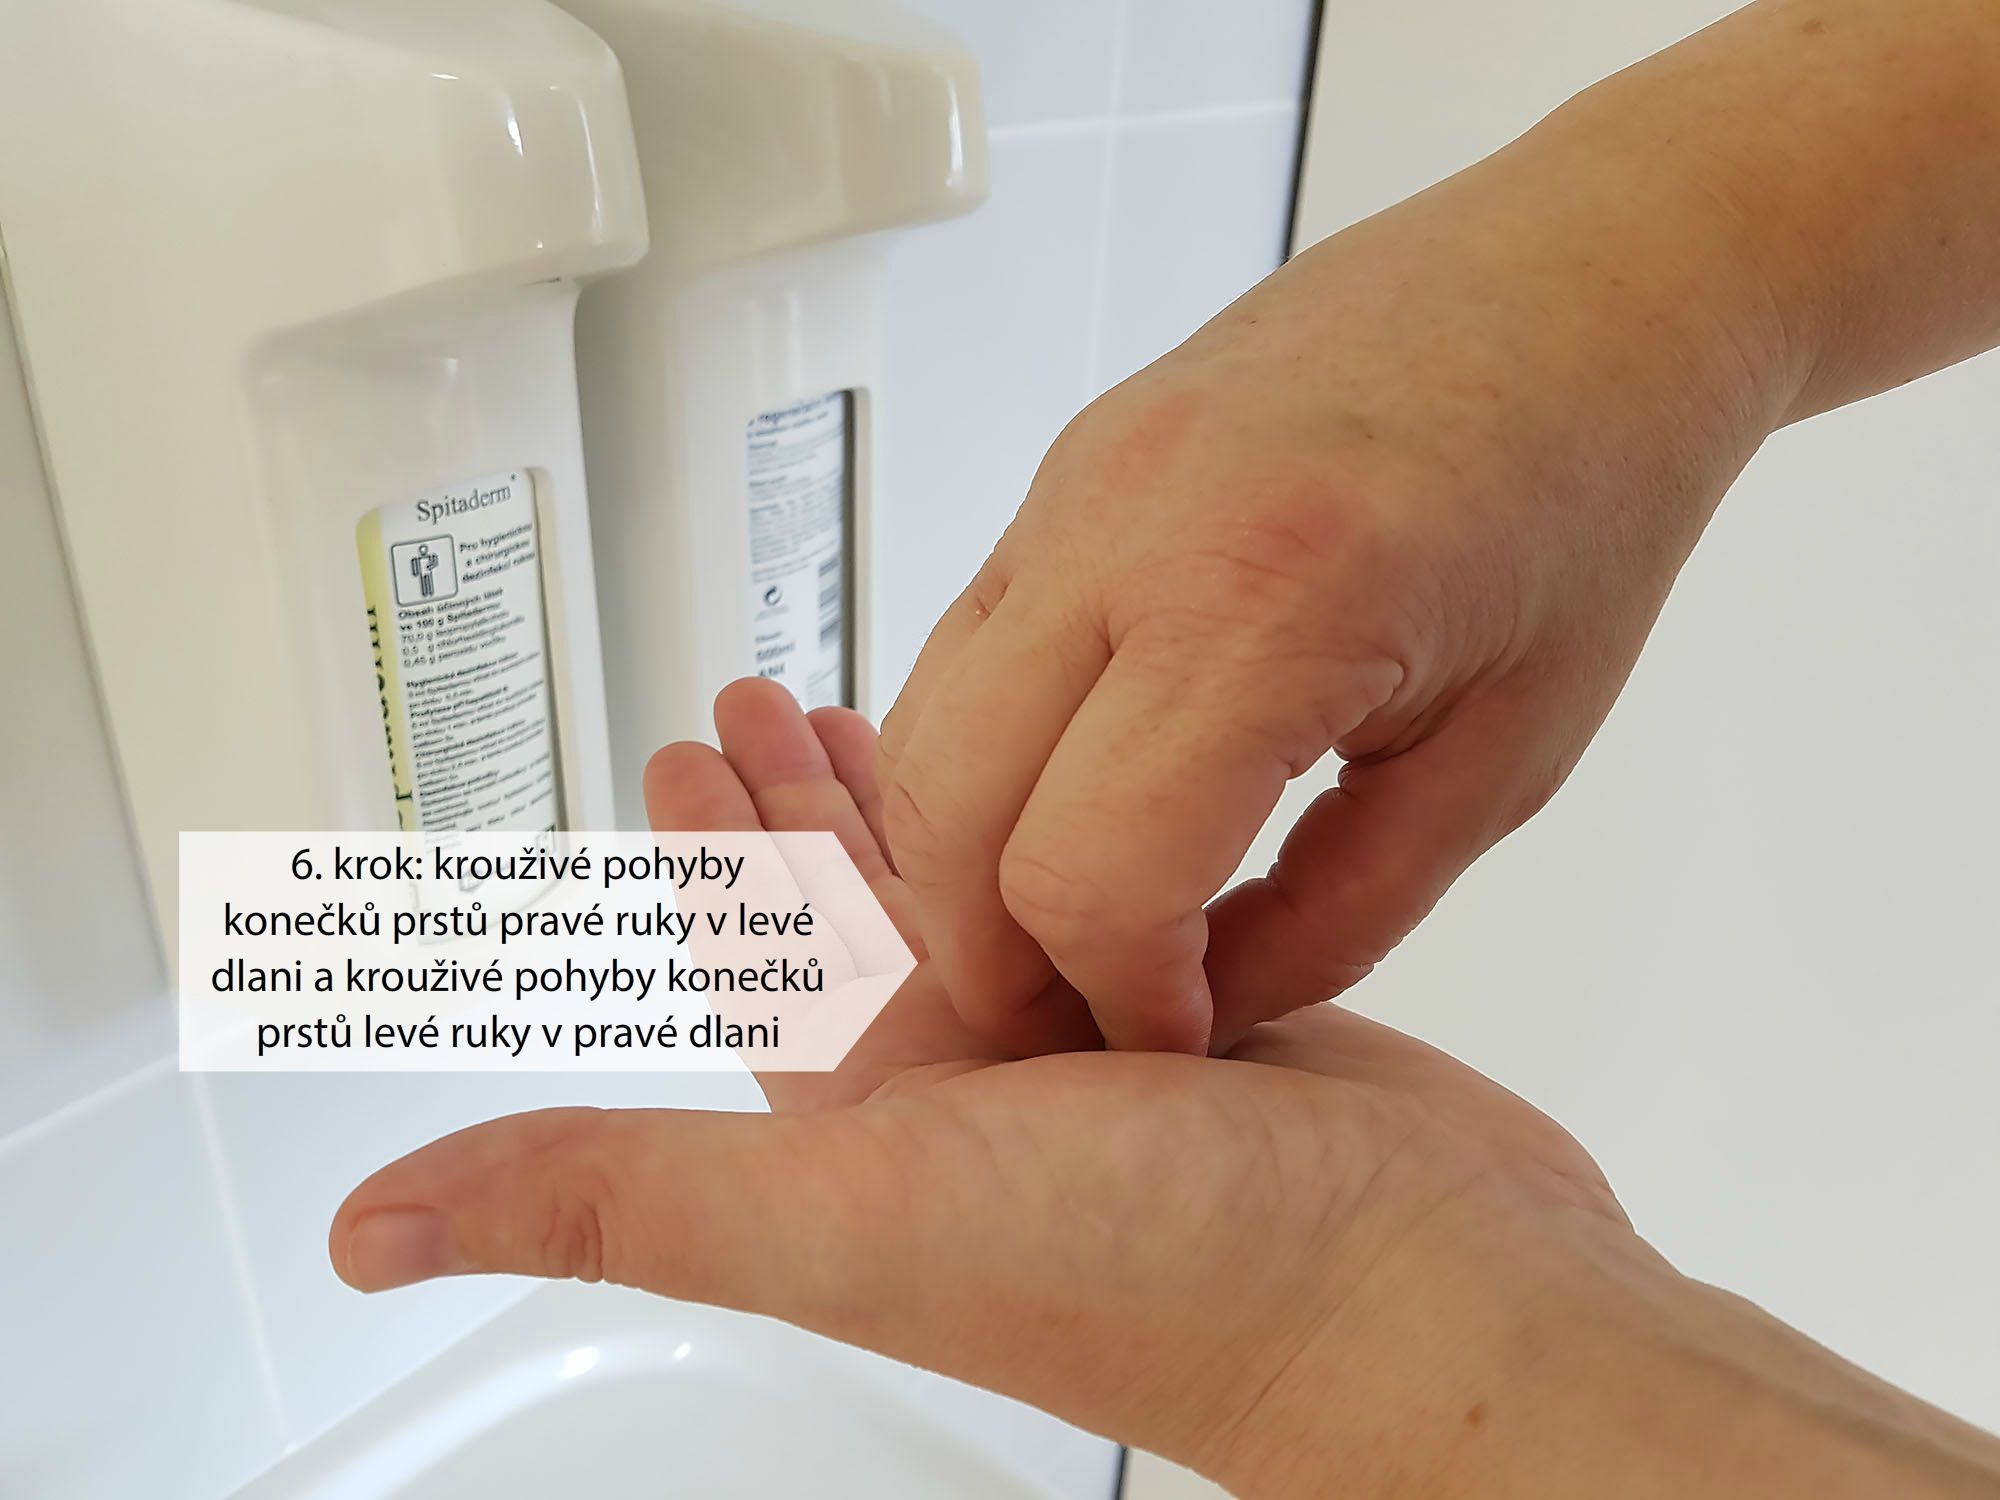 Postup vtírání dezinfekčního roztoku při hygienické dezinfekci rukou (6. krok)